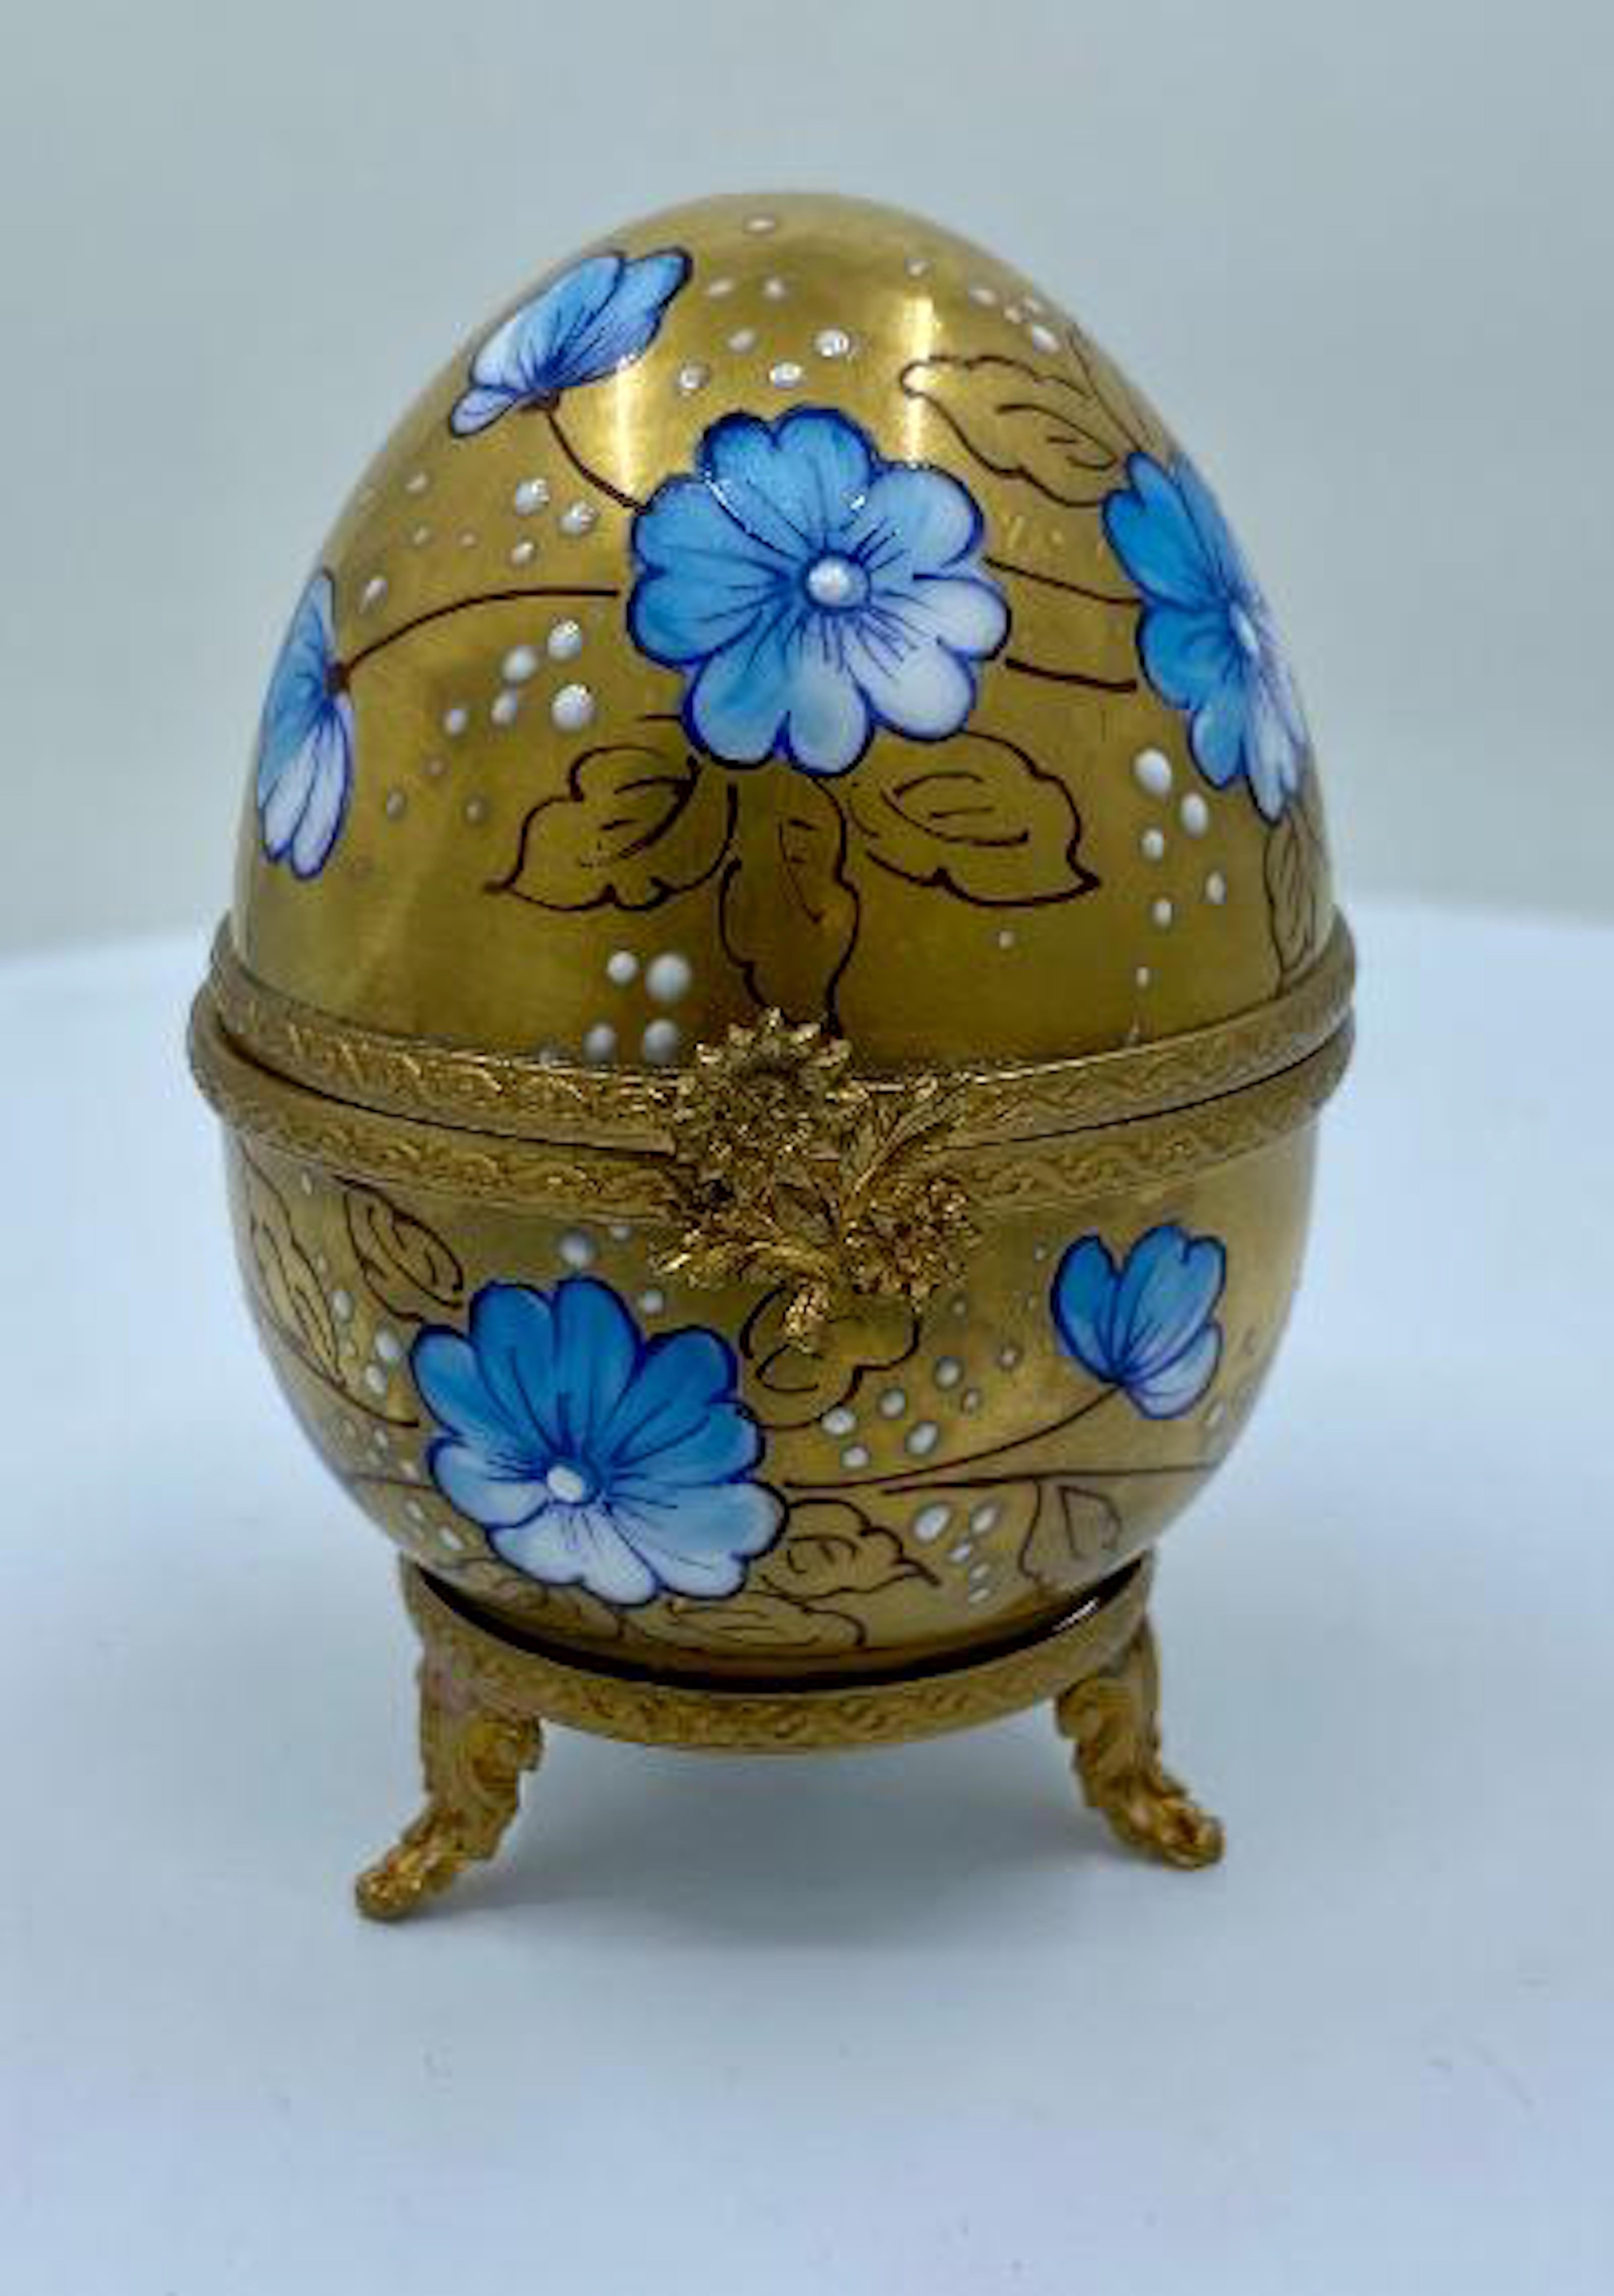 Glass Exquisite Limoges France 24-Karat Gold Porcelain Egg with Perfume Bottle Inside